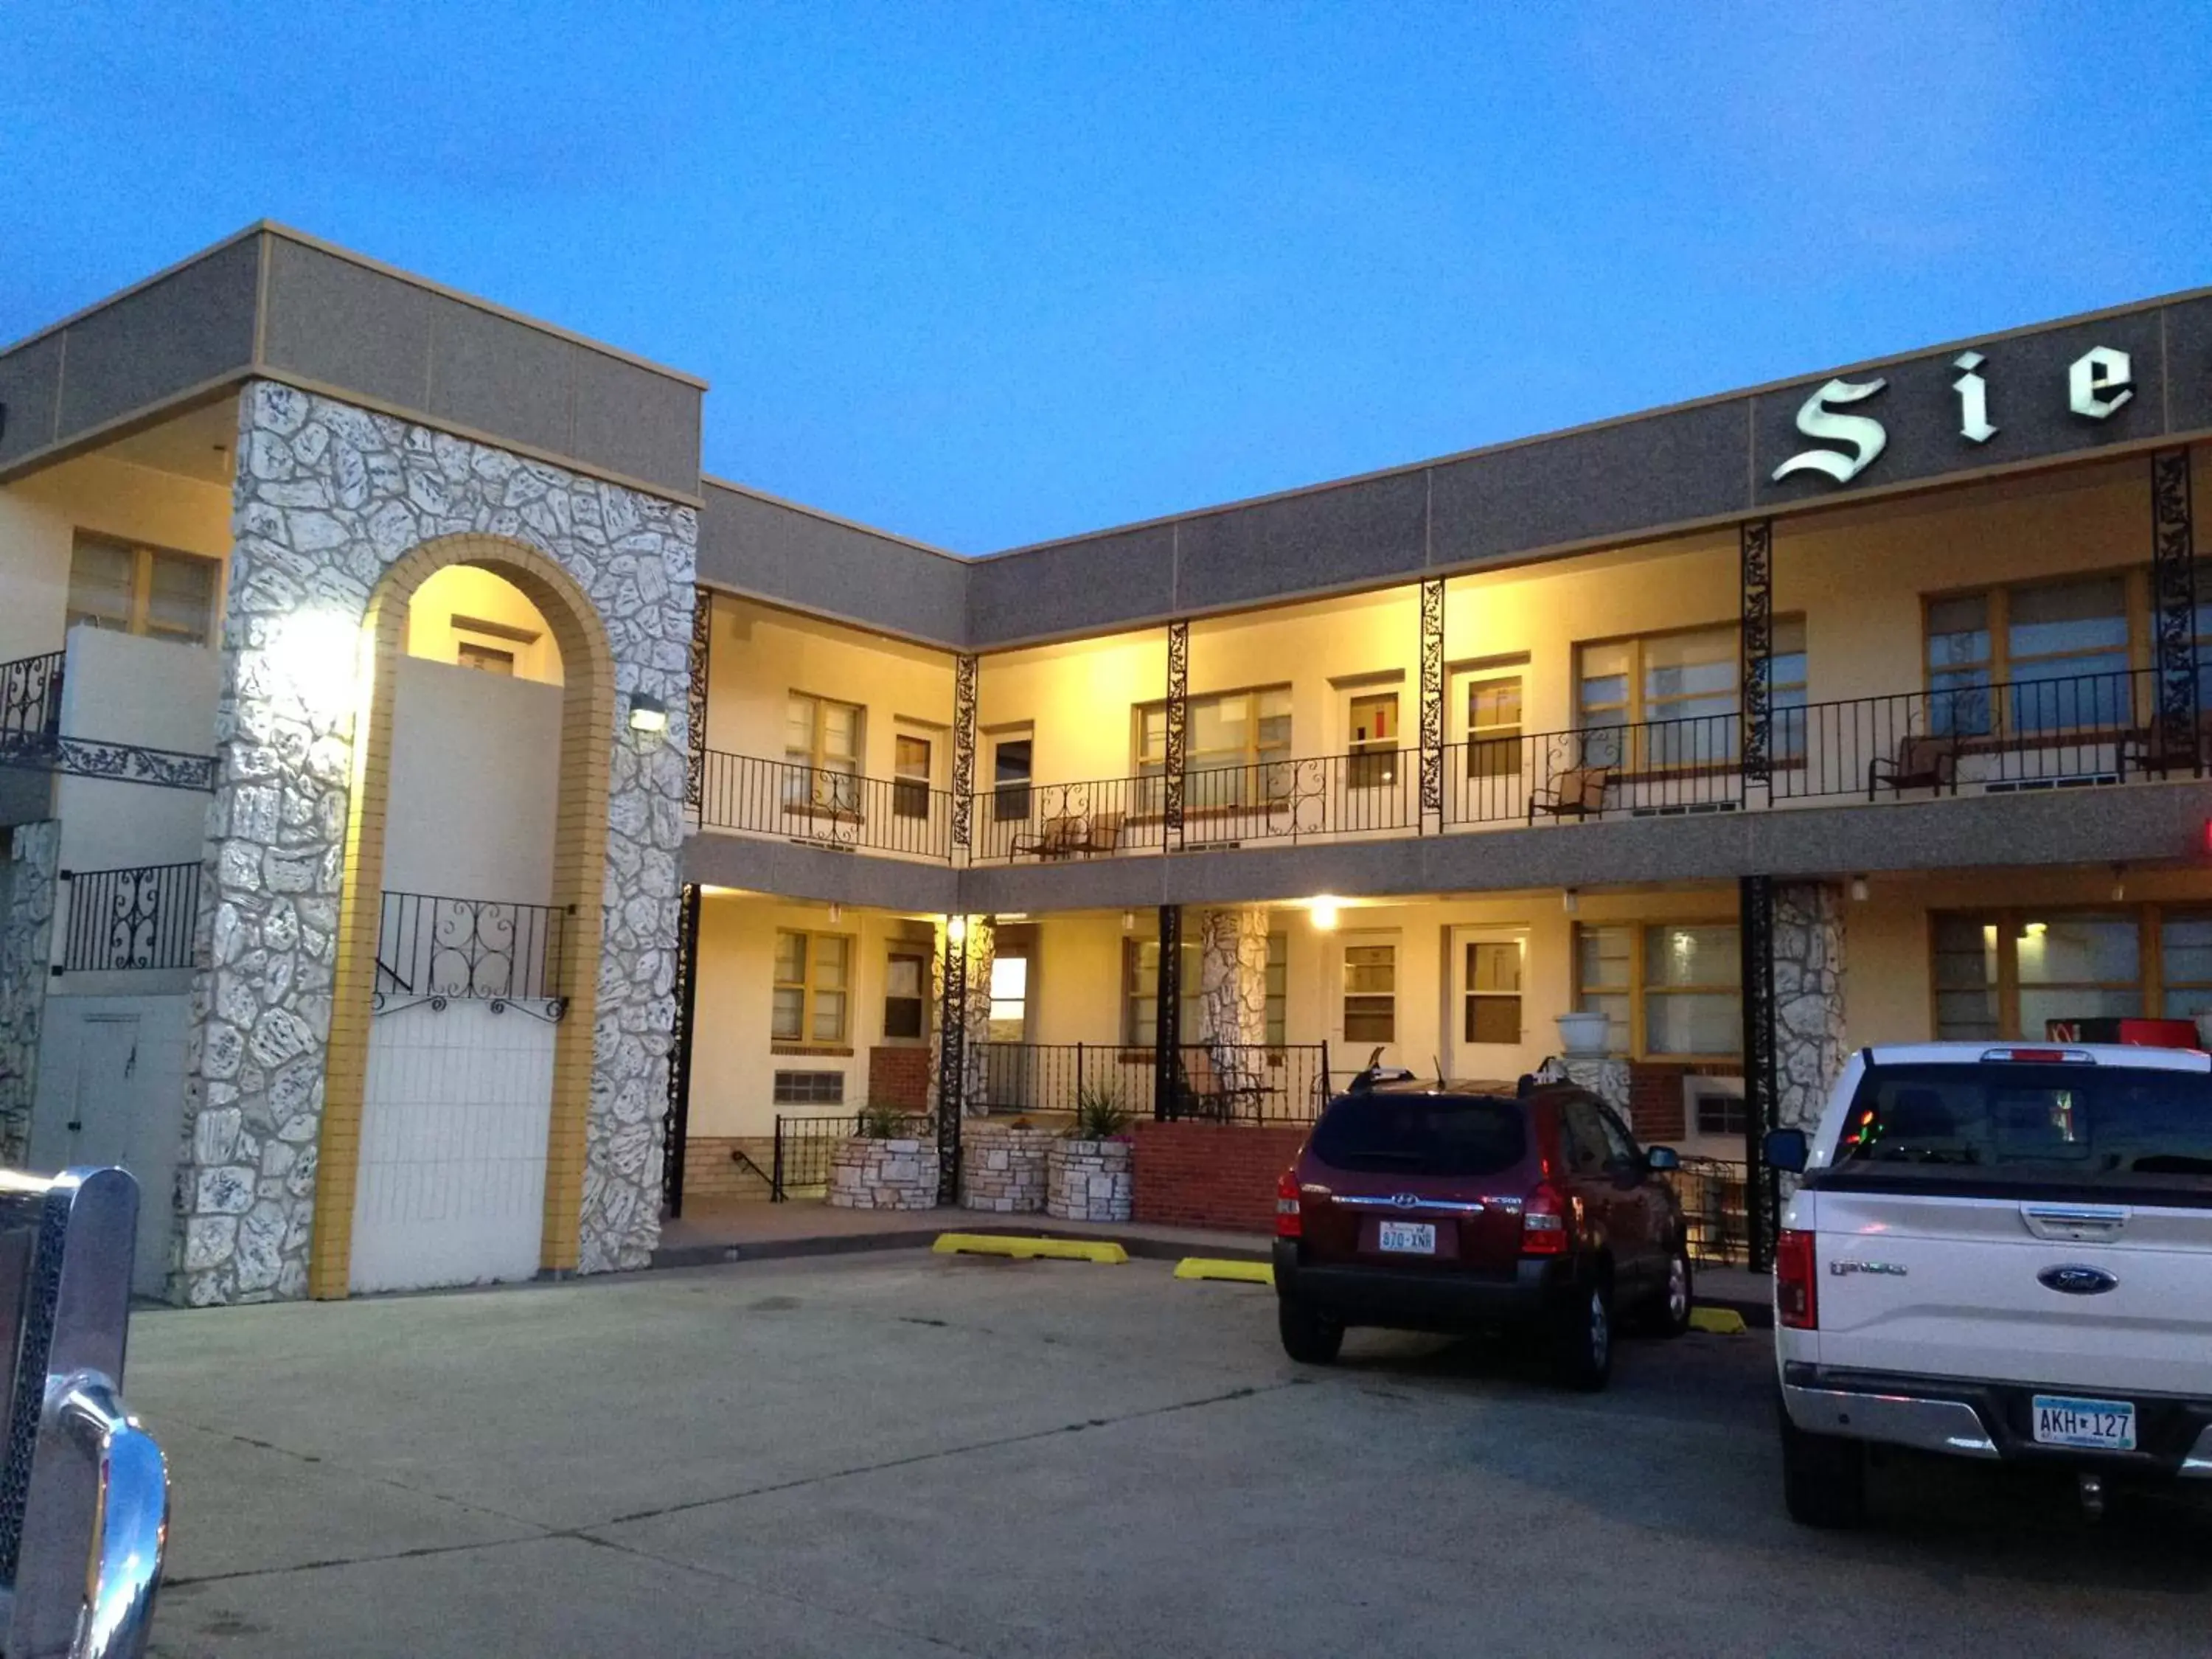 Property Building in Siesta Motel